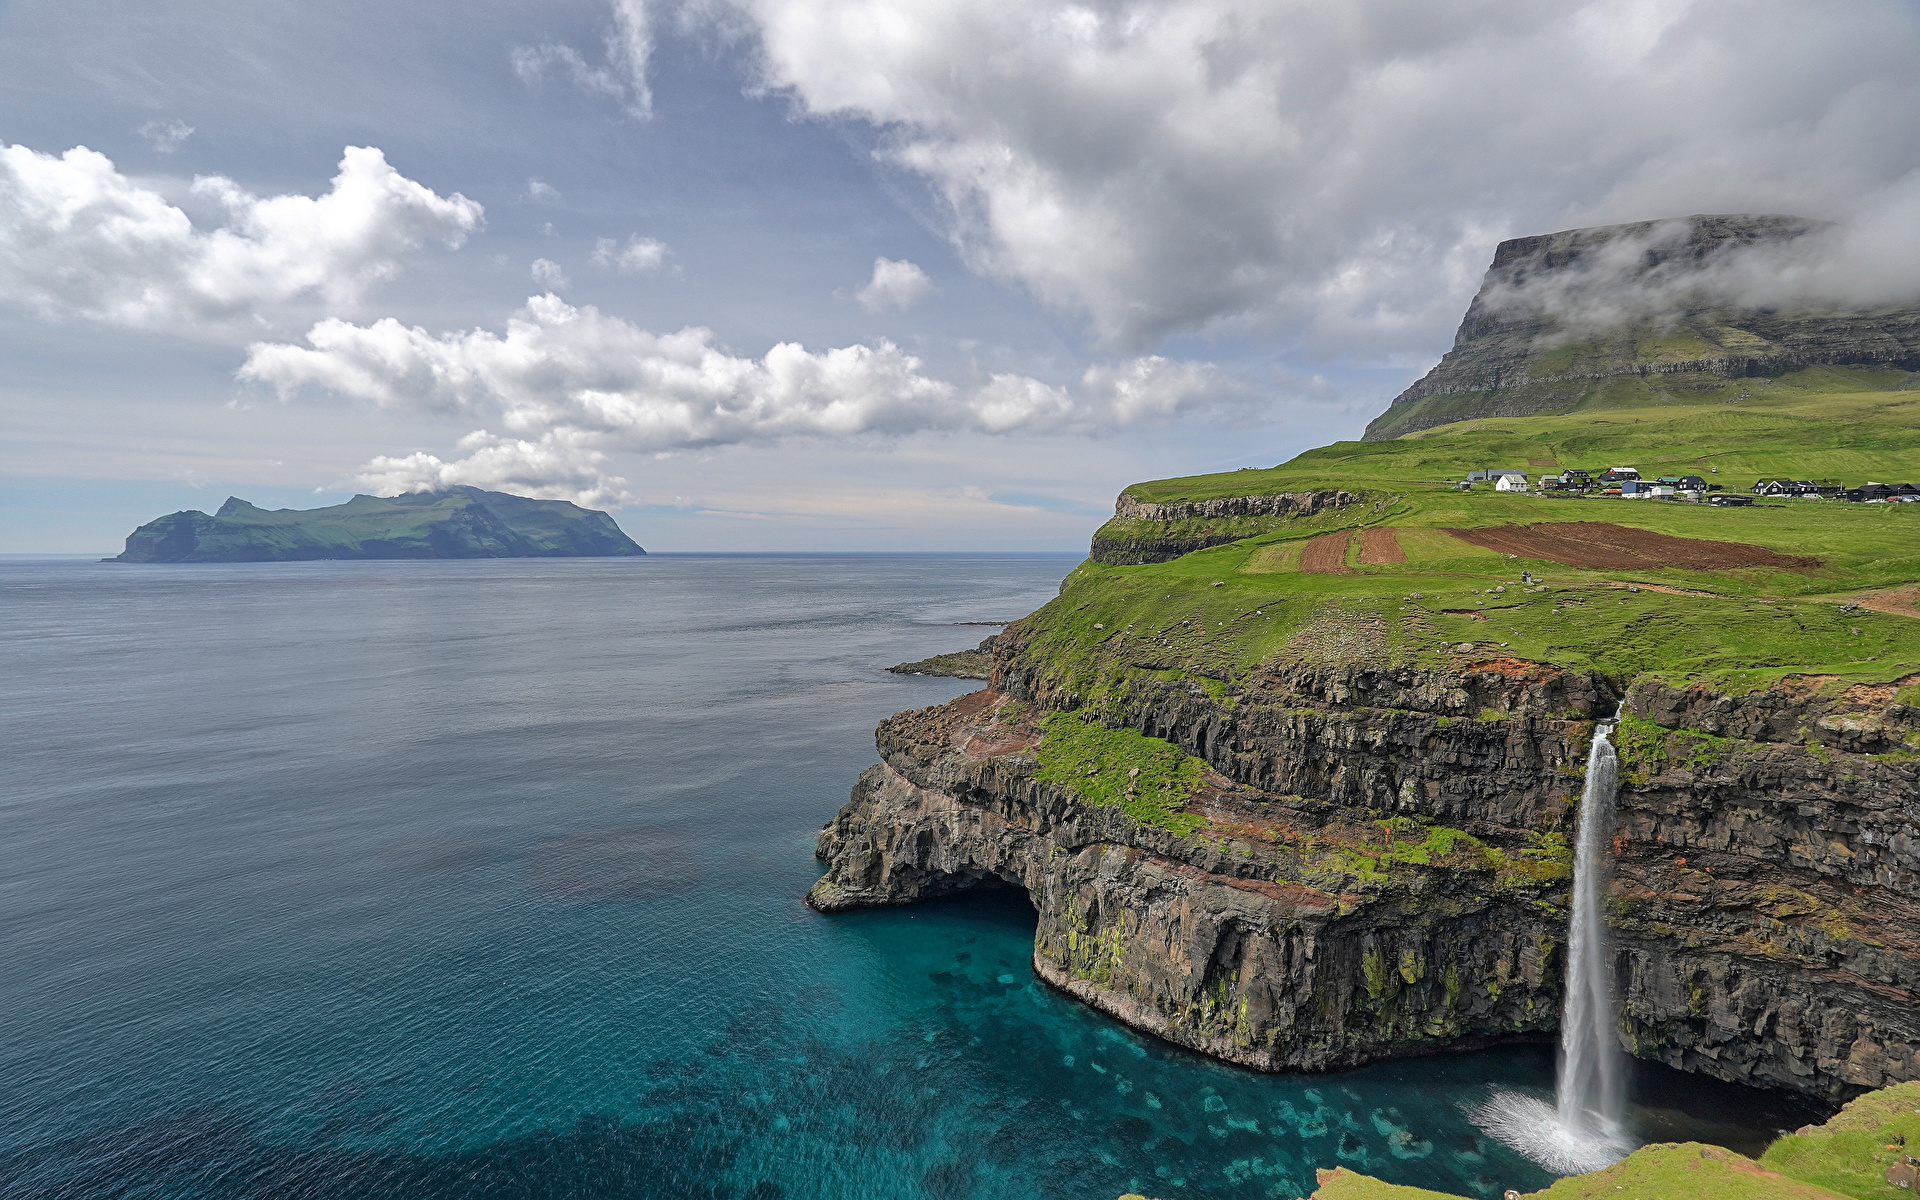 Обои для рабочего стола Дания Faroe Islands скале Природа Водопады Остров Облака 1920x1200 Утес Скала скалы облако облачно